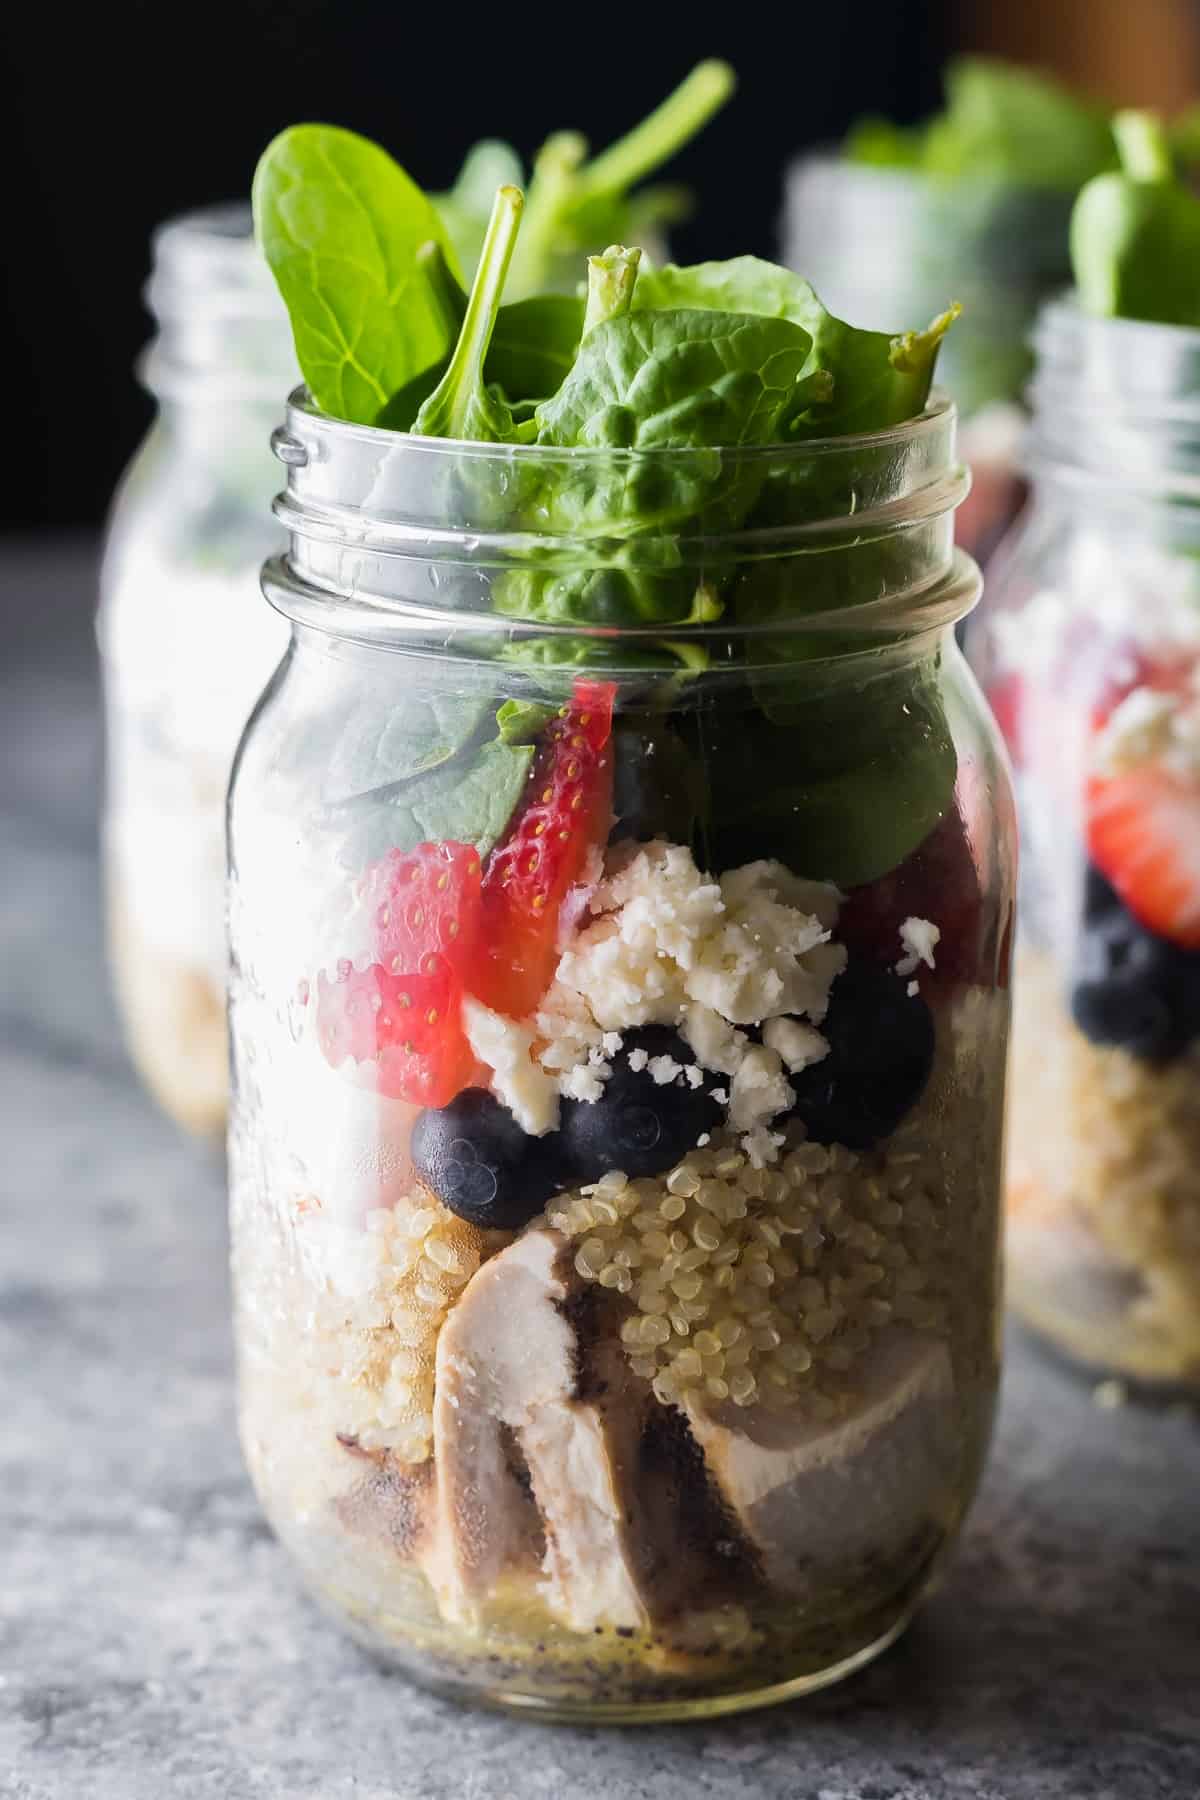 https://sweetpeasandsaffron.com/wp-content/uploads/2017/06/Strawberry-Spinach-Quinoa-Jar-Salads-2.jpg